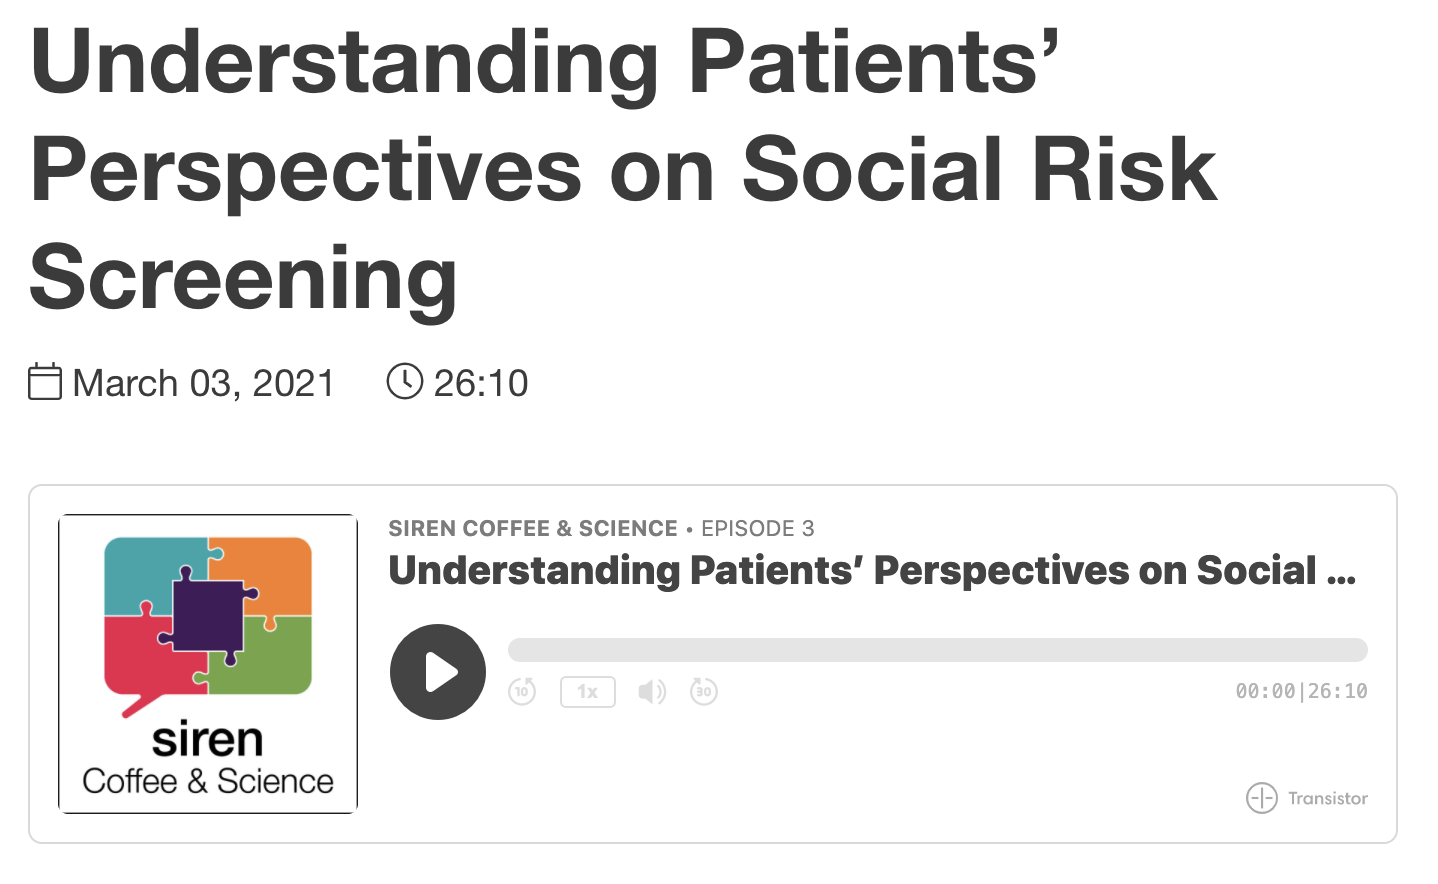 Understanding Patients’ Perspectives on Social Risk Screening